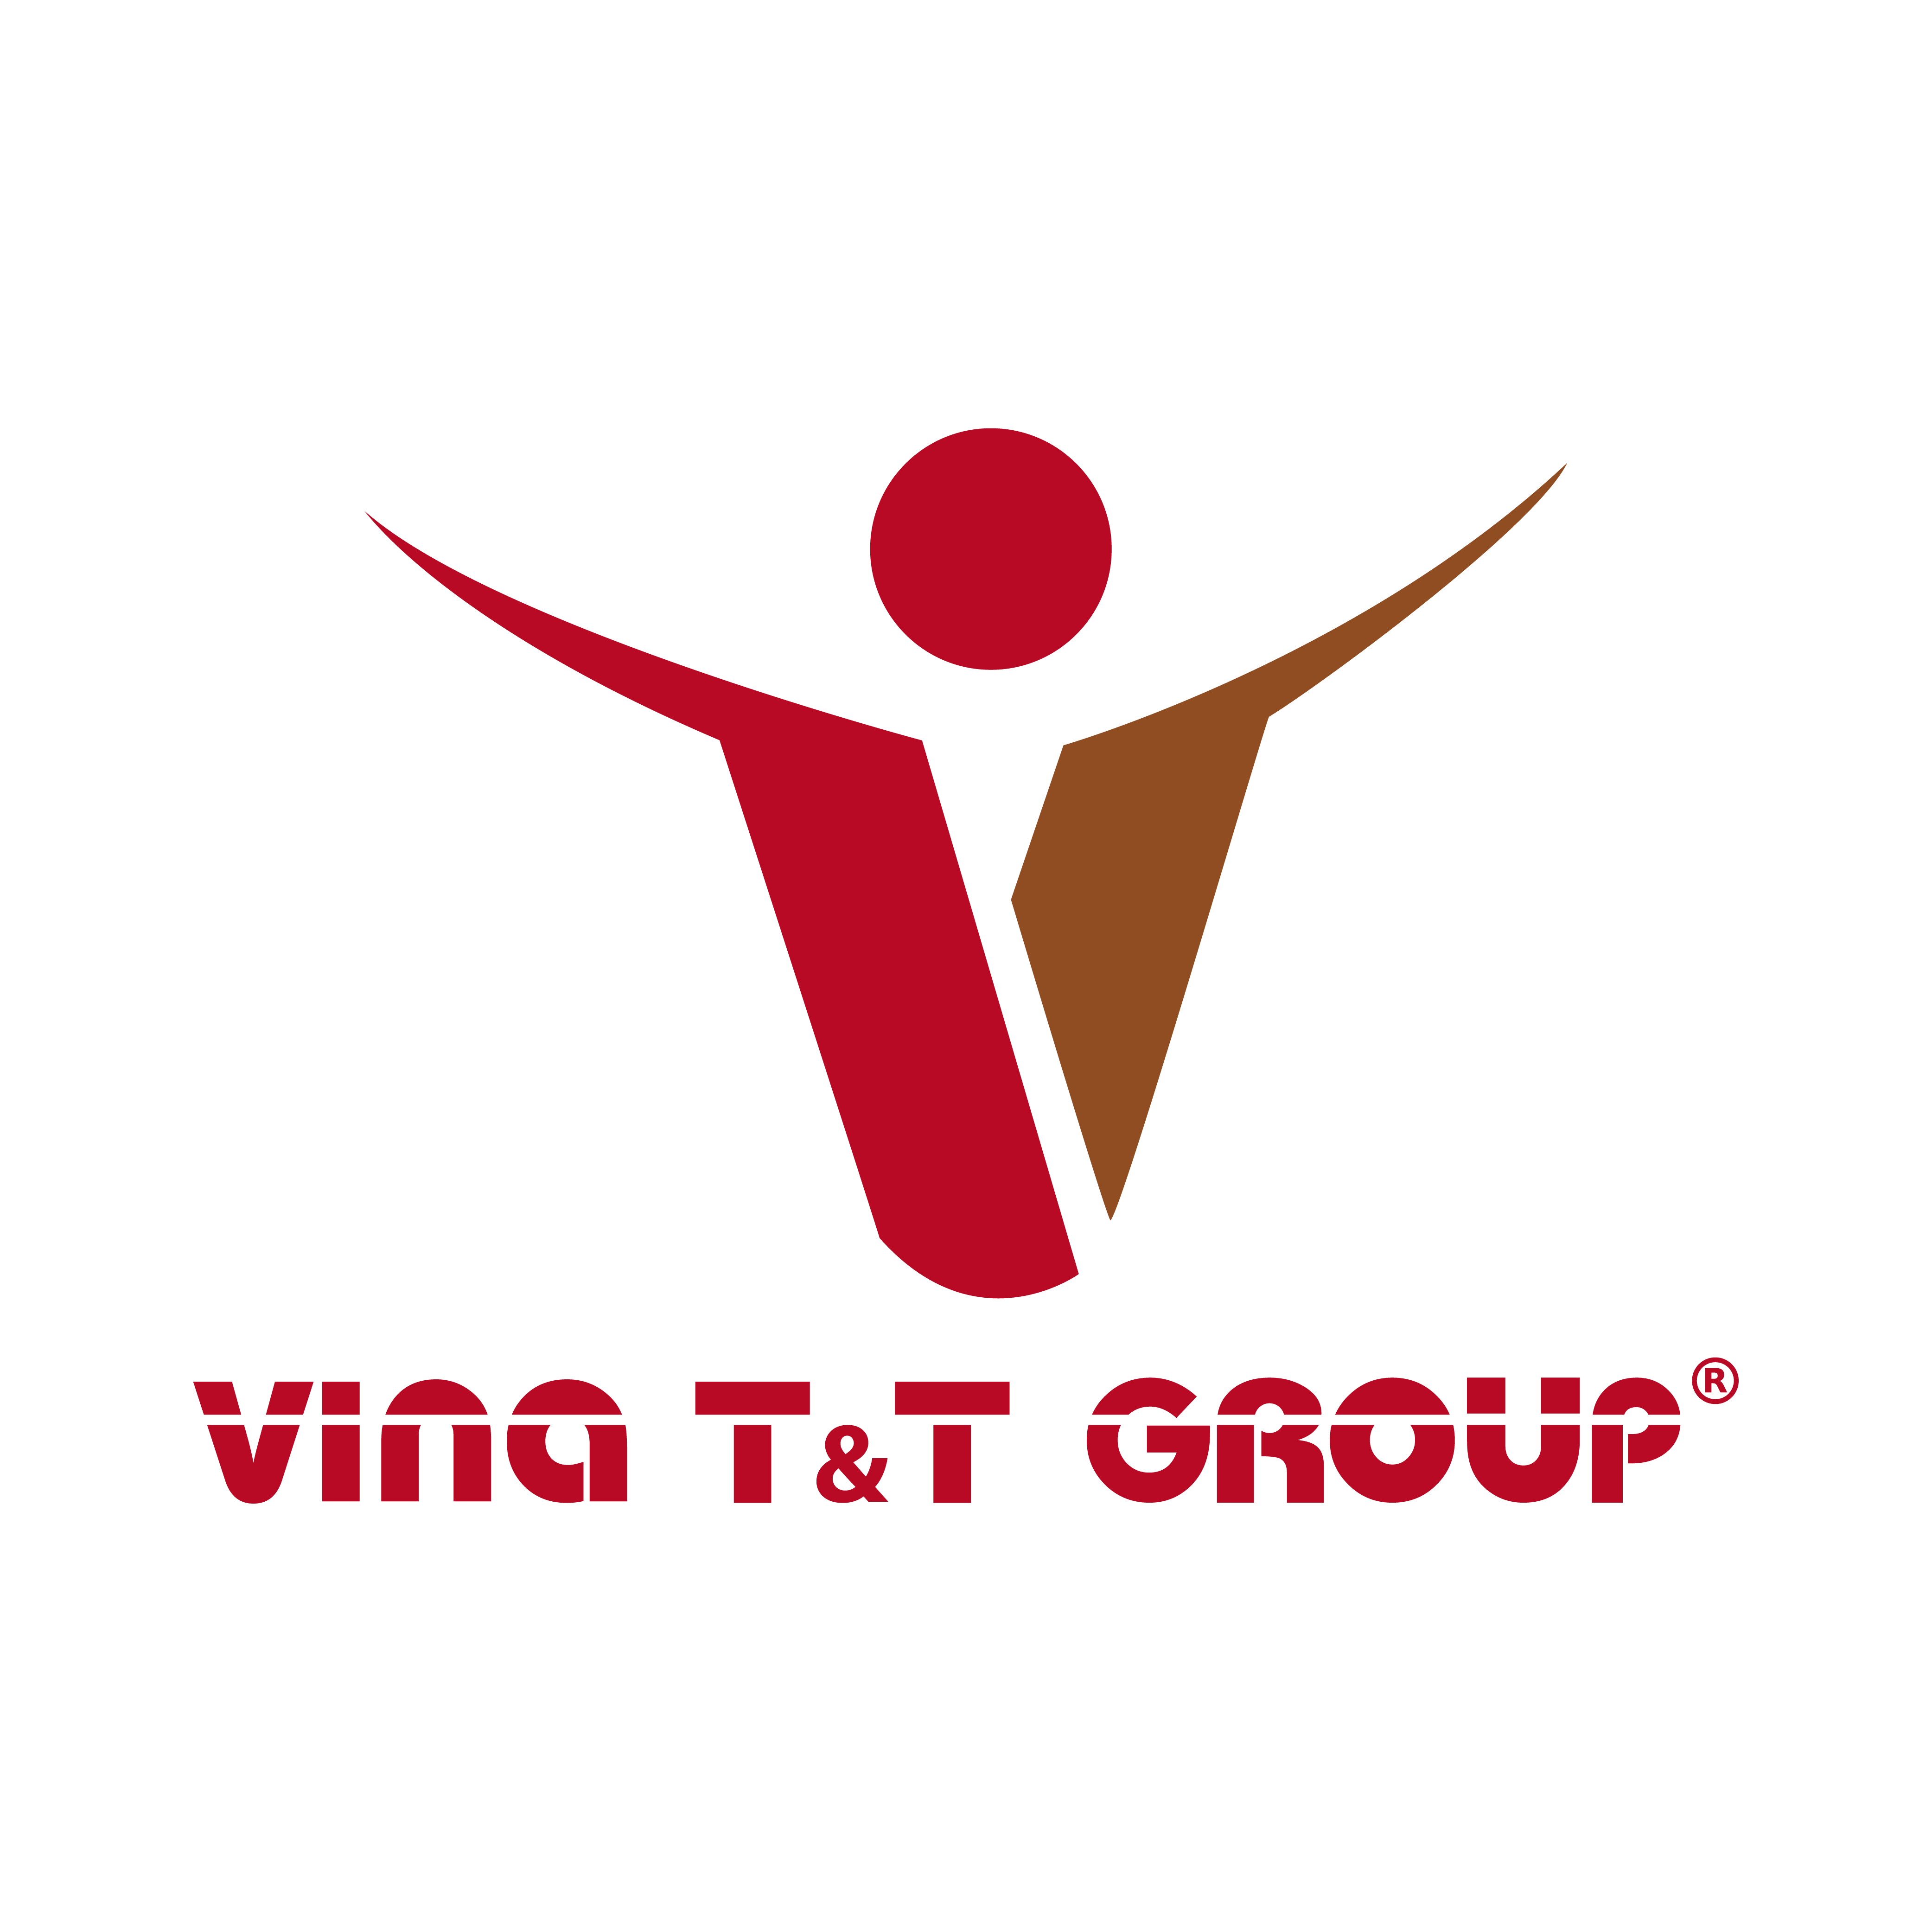 Vina TT Group